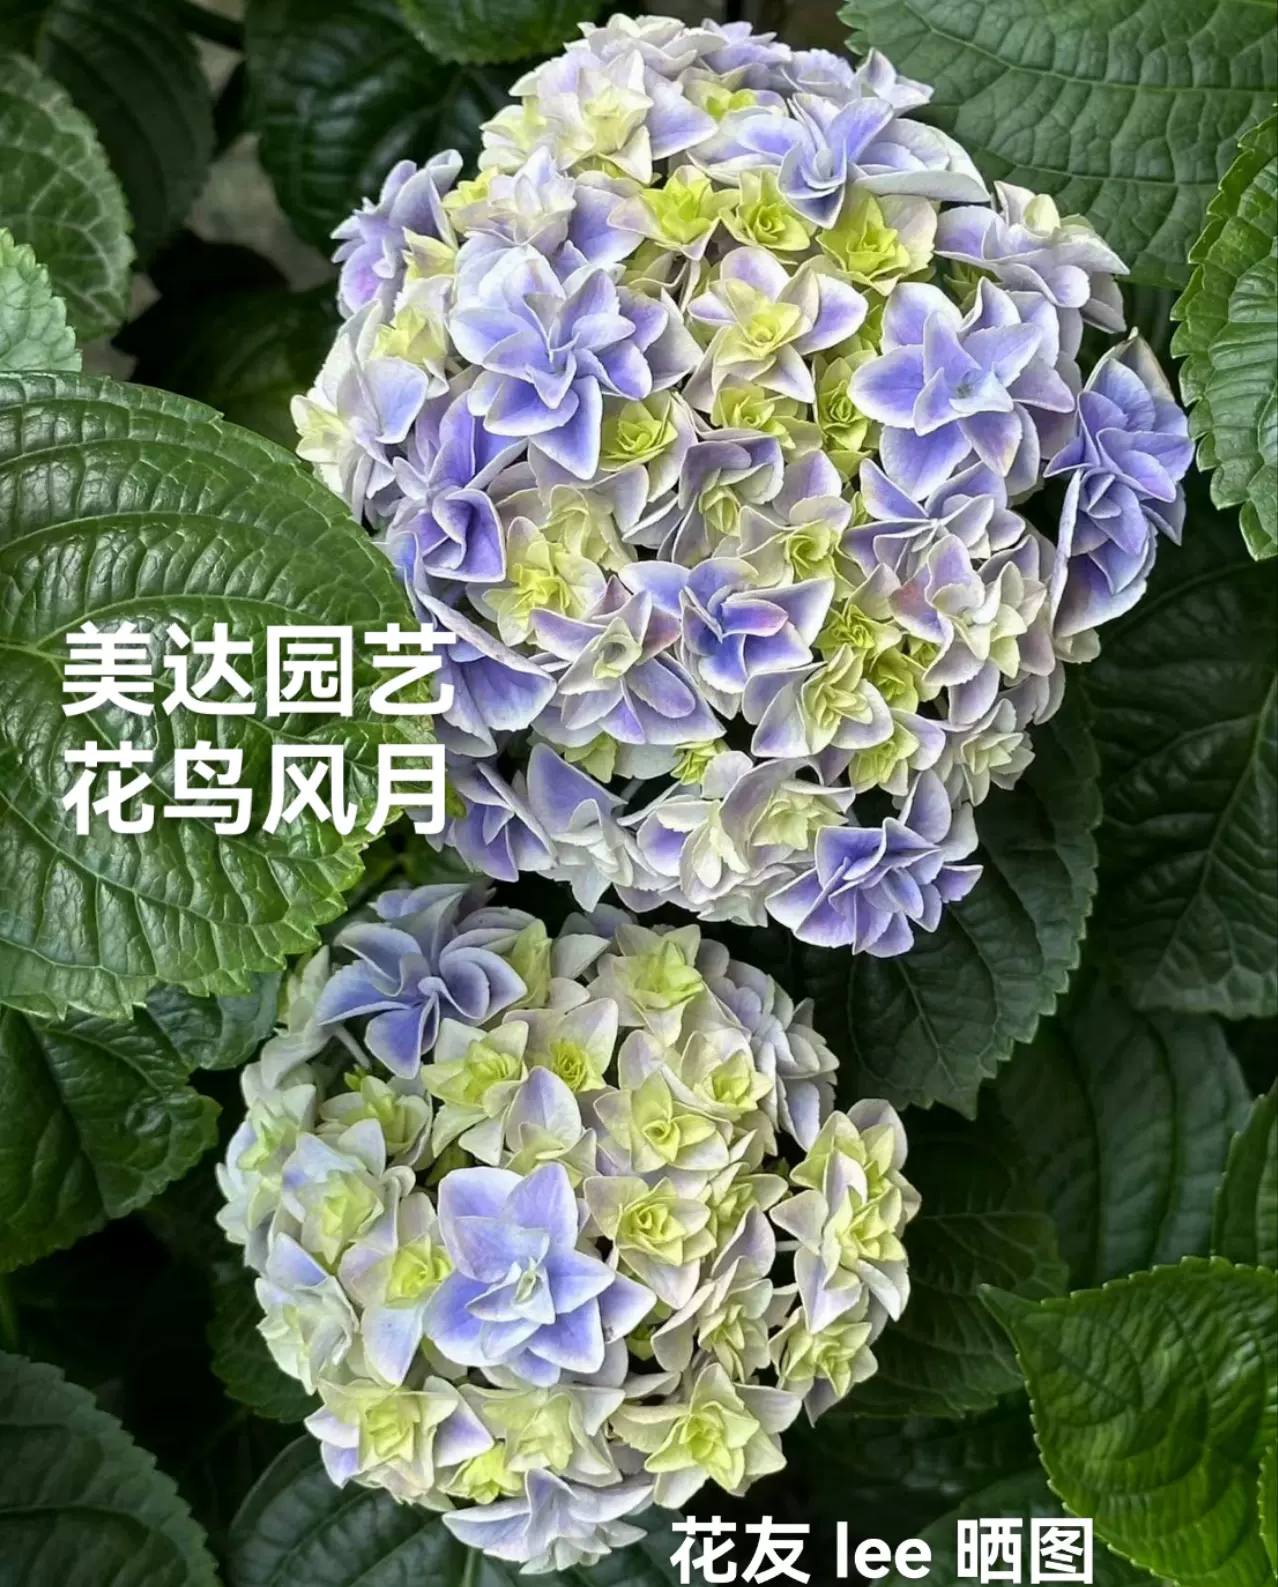 新品绣球花苗花鸟风月麒麟旭日升天蓝楹进口重瓣花卉庭院植物-Taobao